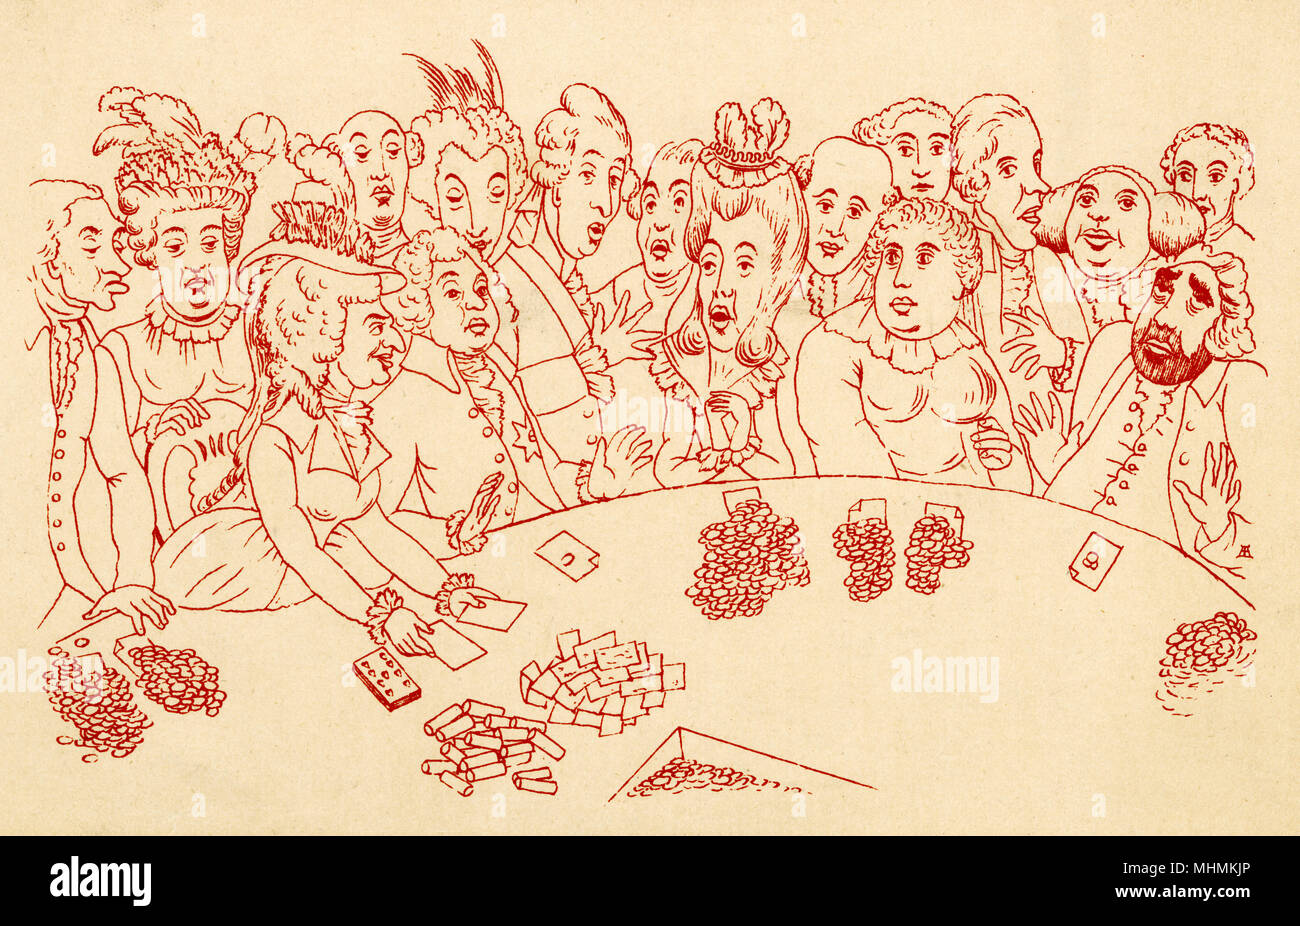 Les participants à une partie de jeu tous les types d'usure de l'expression du visage. Date : 1790 Banque D'Images